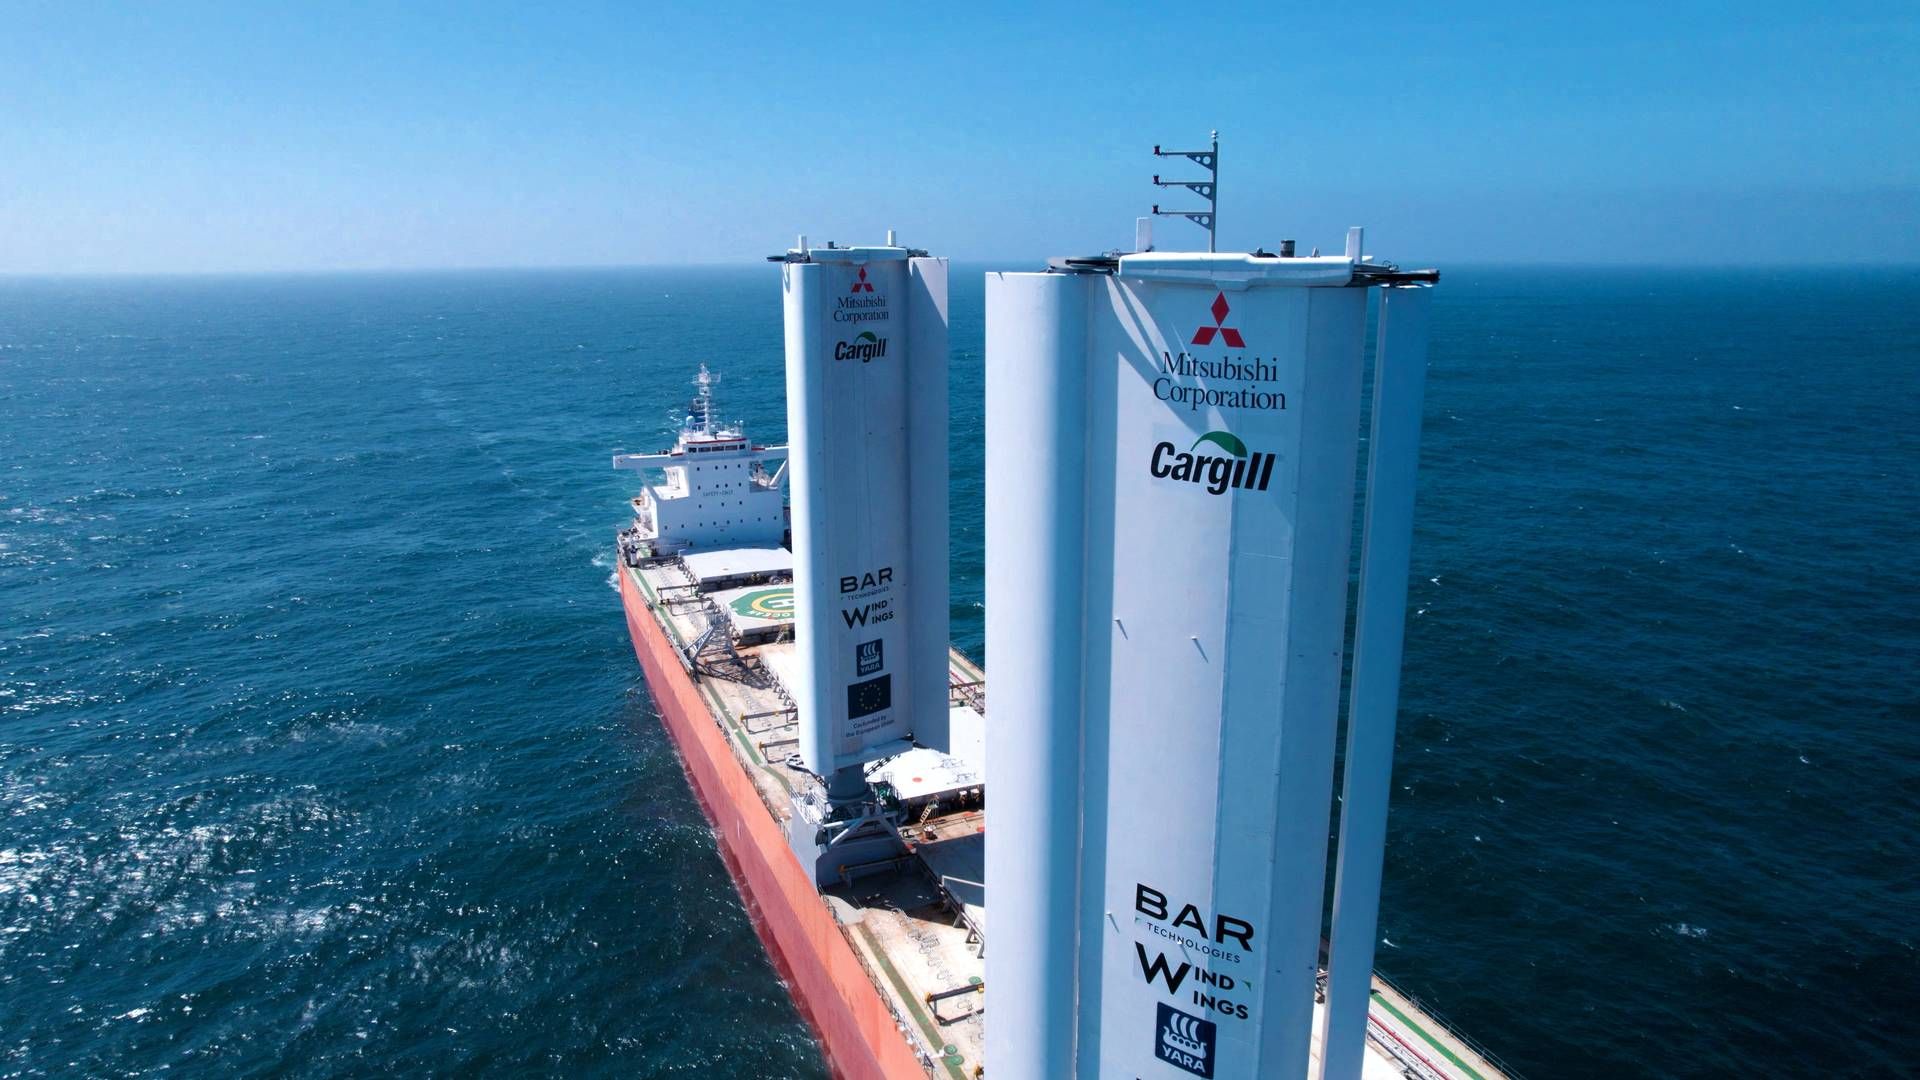 I august testede Cargill International et nyt vinddrevet skib. Nu lancerer råvareselskabet i et fælles udviklingsprojekt med bl.a. Lloyds Register et nyt kamsarmax tørlastskib, der kan sejle på metanol og med vindkraft. | Foto: Cargill Bulgaria/Reuters/Ritzau Scanpix